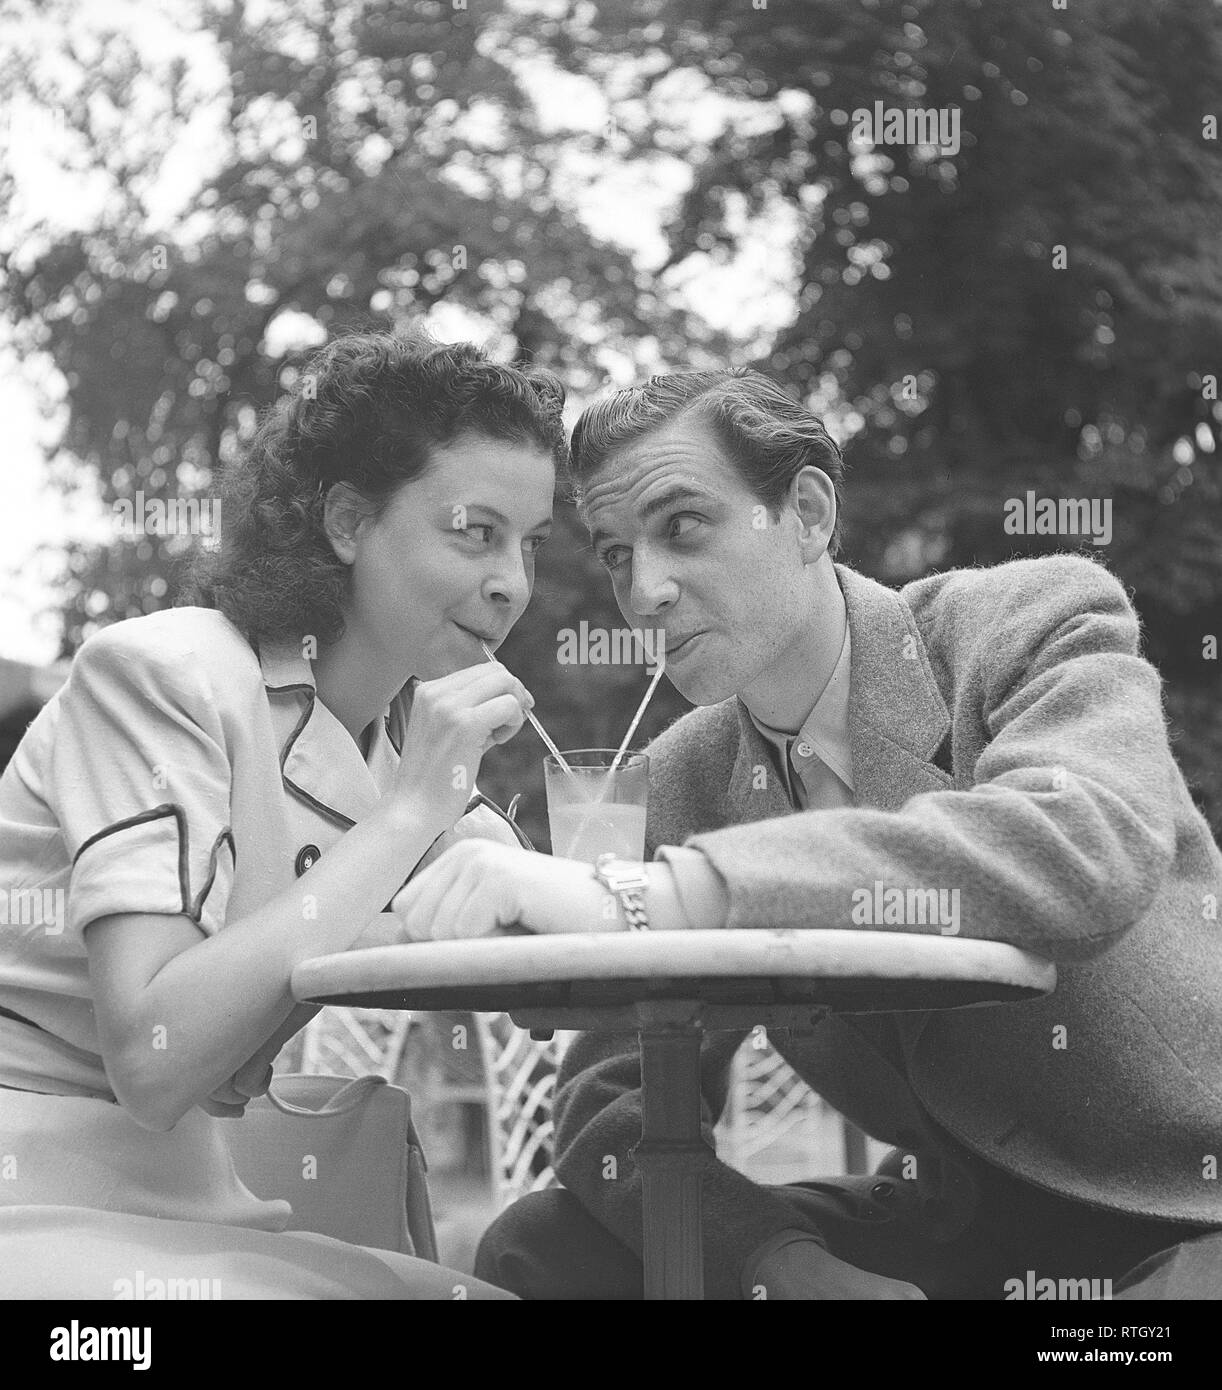 1940s lifestyle. Una giovane coppia in un caffè all'aperto. Essi sono di bere dallo stesso bicchiere di limonata con cannucce. La Svezia. Foto Kristoffersson Ref U89-2. La Svezia 1946 Foto Stock